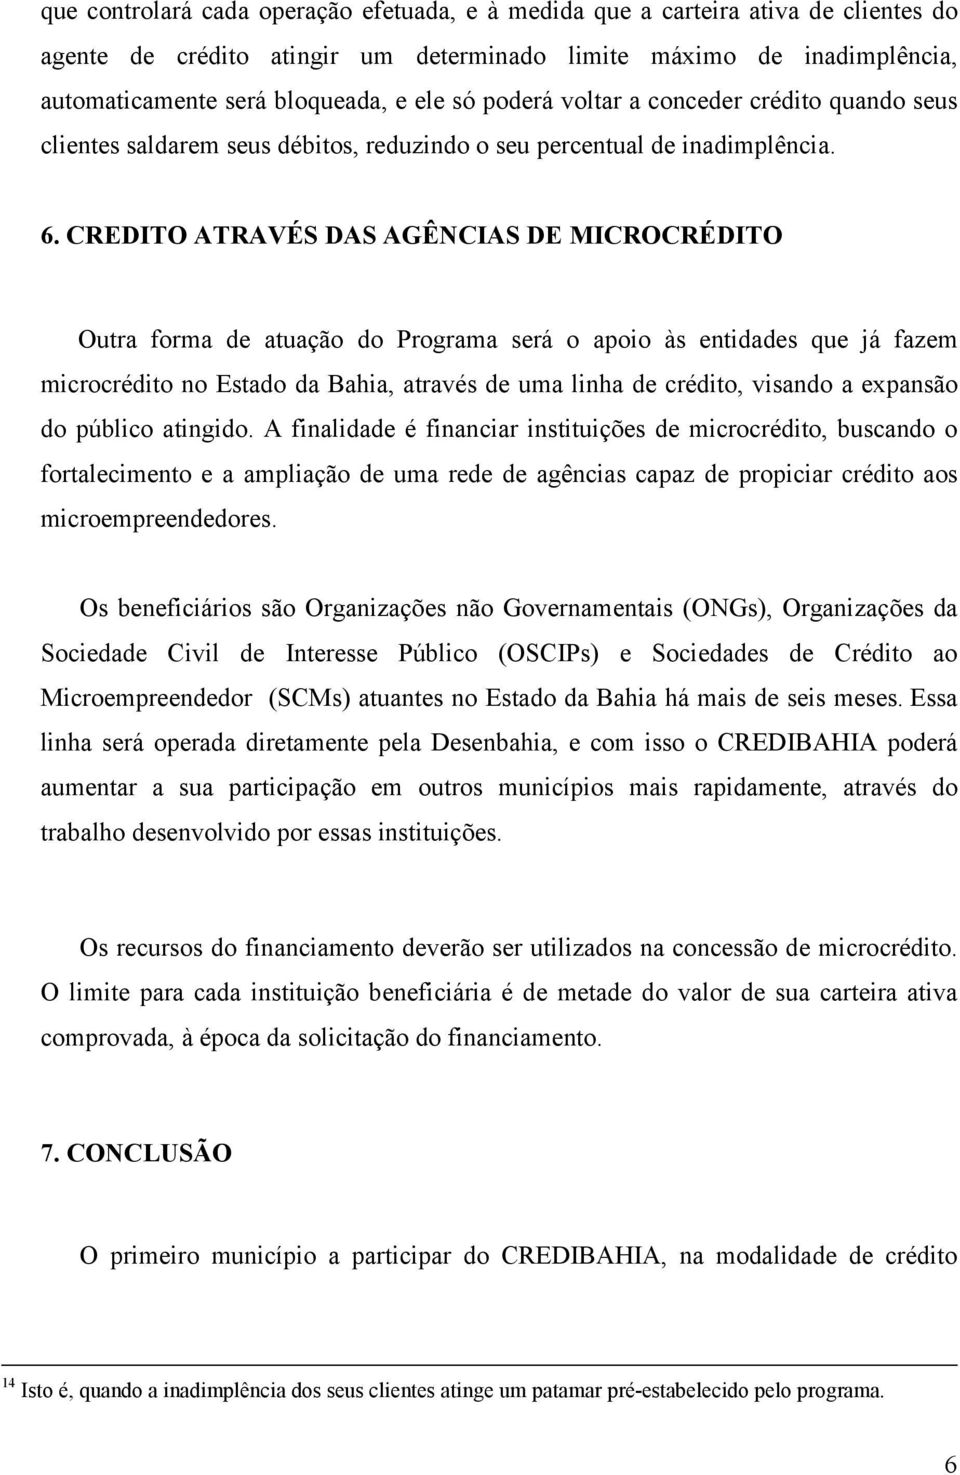 CREDITO ATRAVÉS DAS AGÊNCIAS DE MICROCRÉDITO Outra forma de atuação do Programa será o apoio às entidades que já fazem microcrédito no Estado da Bahia, através de uma linha de crédito, visando a